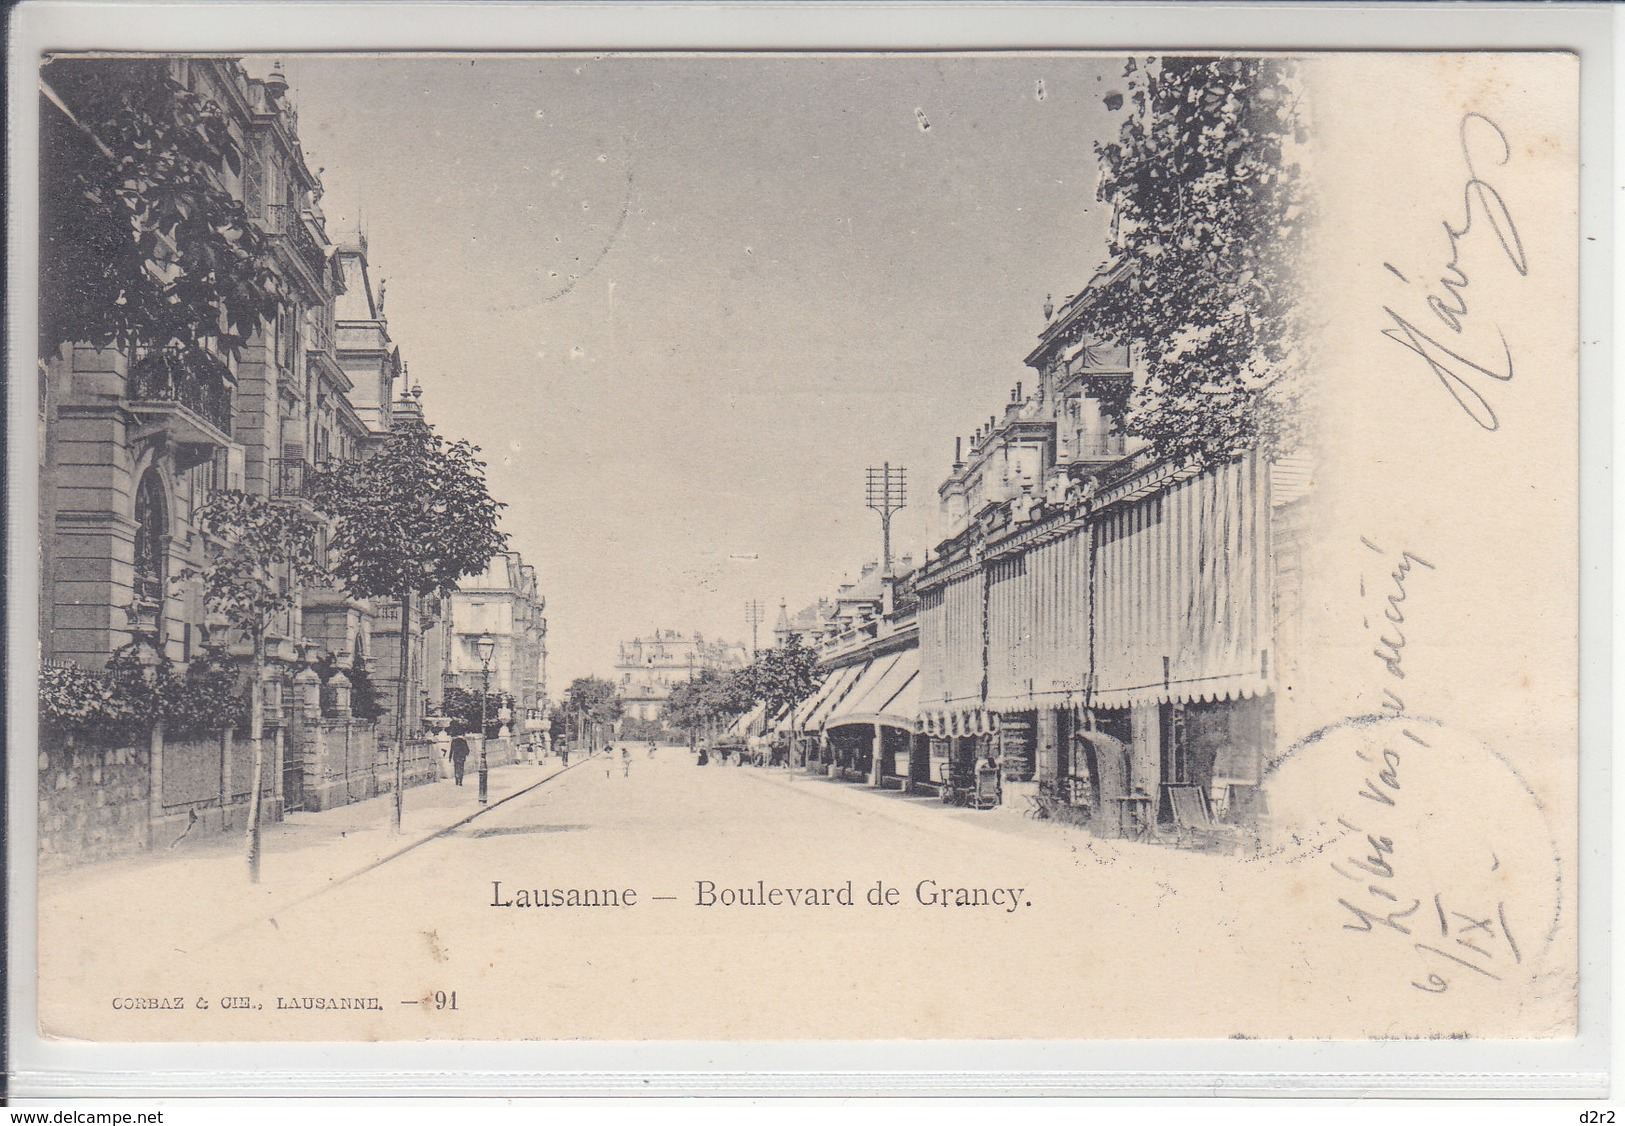 LAUSANNE - BOULEVARD DE GRANCY - ANIMEE - 6.09.01 - DOS UNIQUE  - POUR TURNOV EN AUTRICHE - Grancy